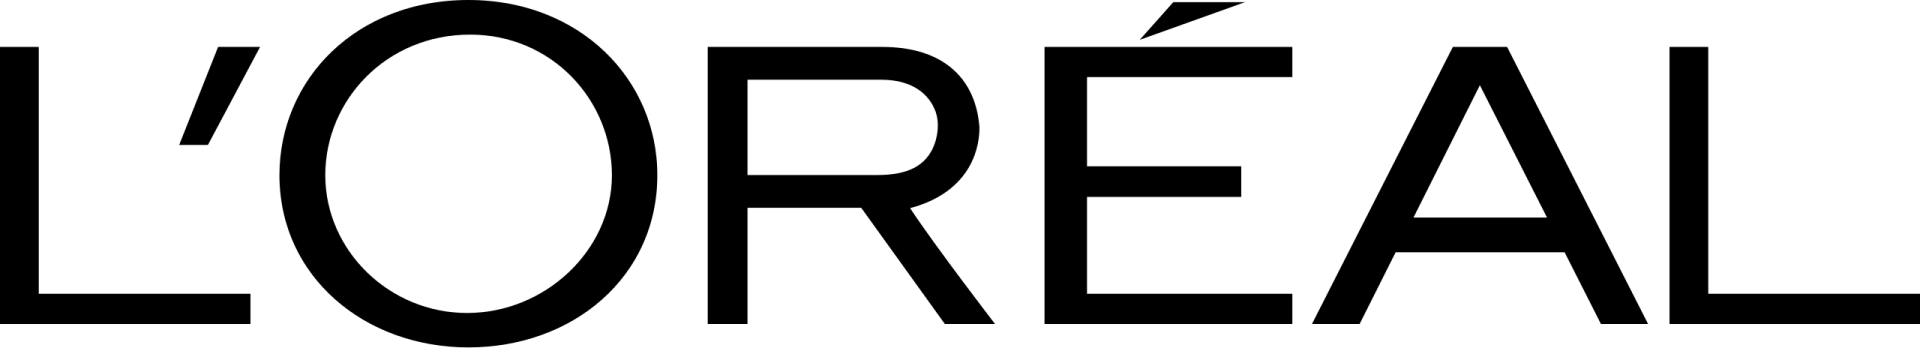 Logo de l'entrerise L'Oréal, représentant un partenaire du salon de coiffure